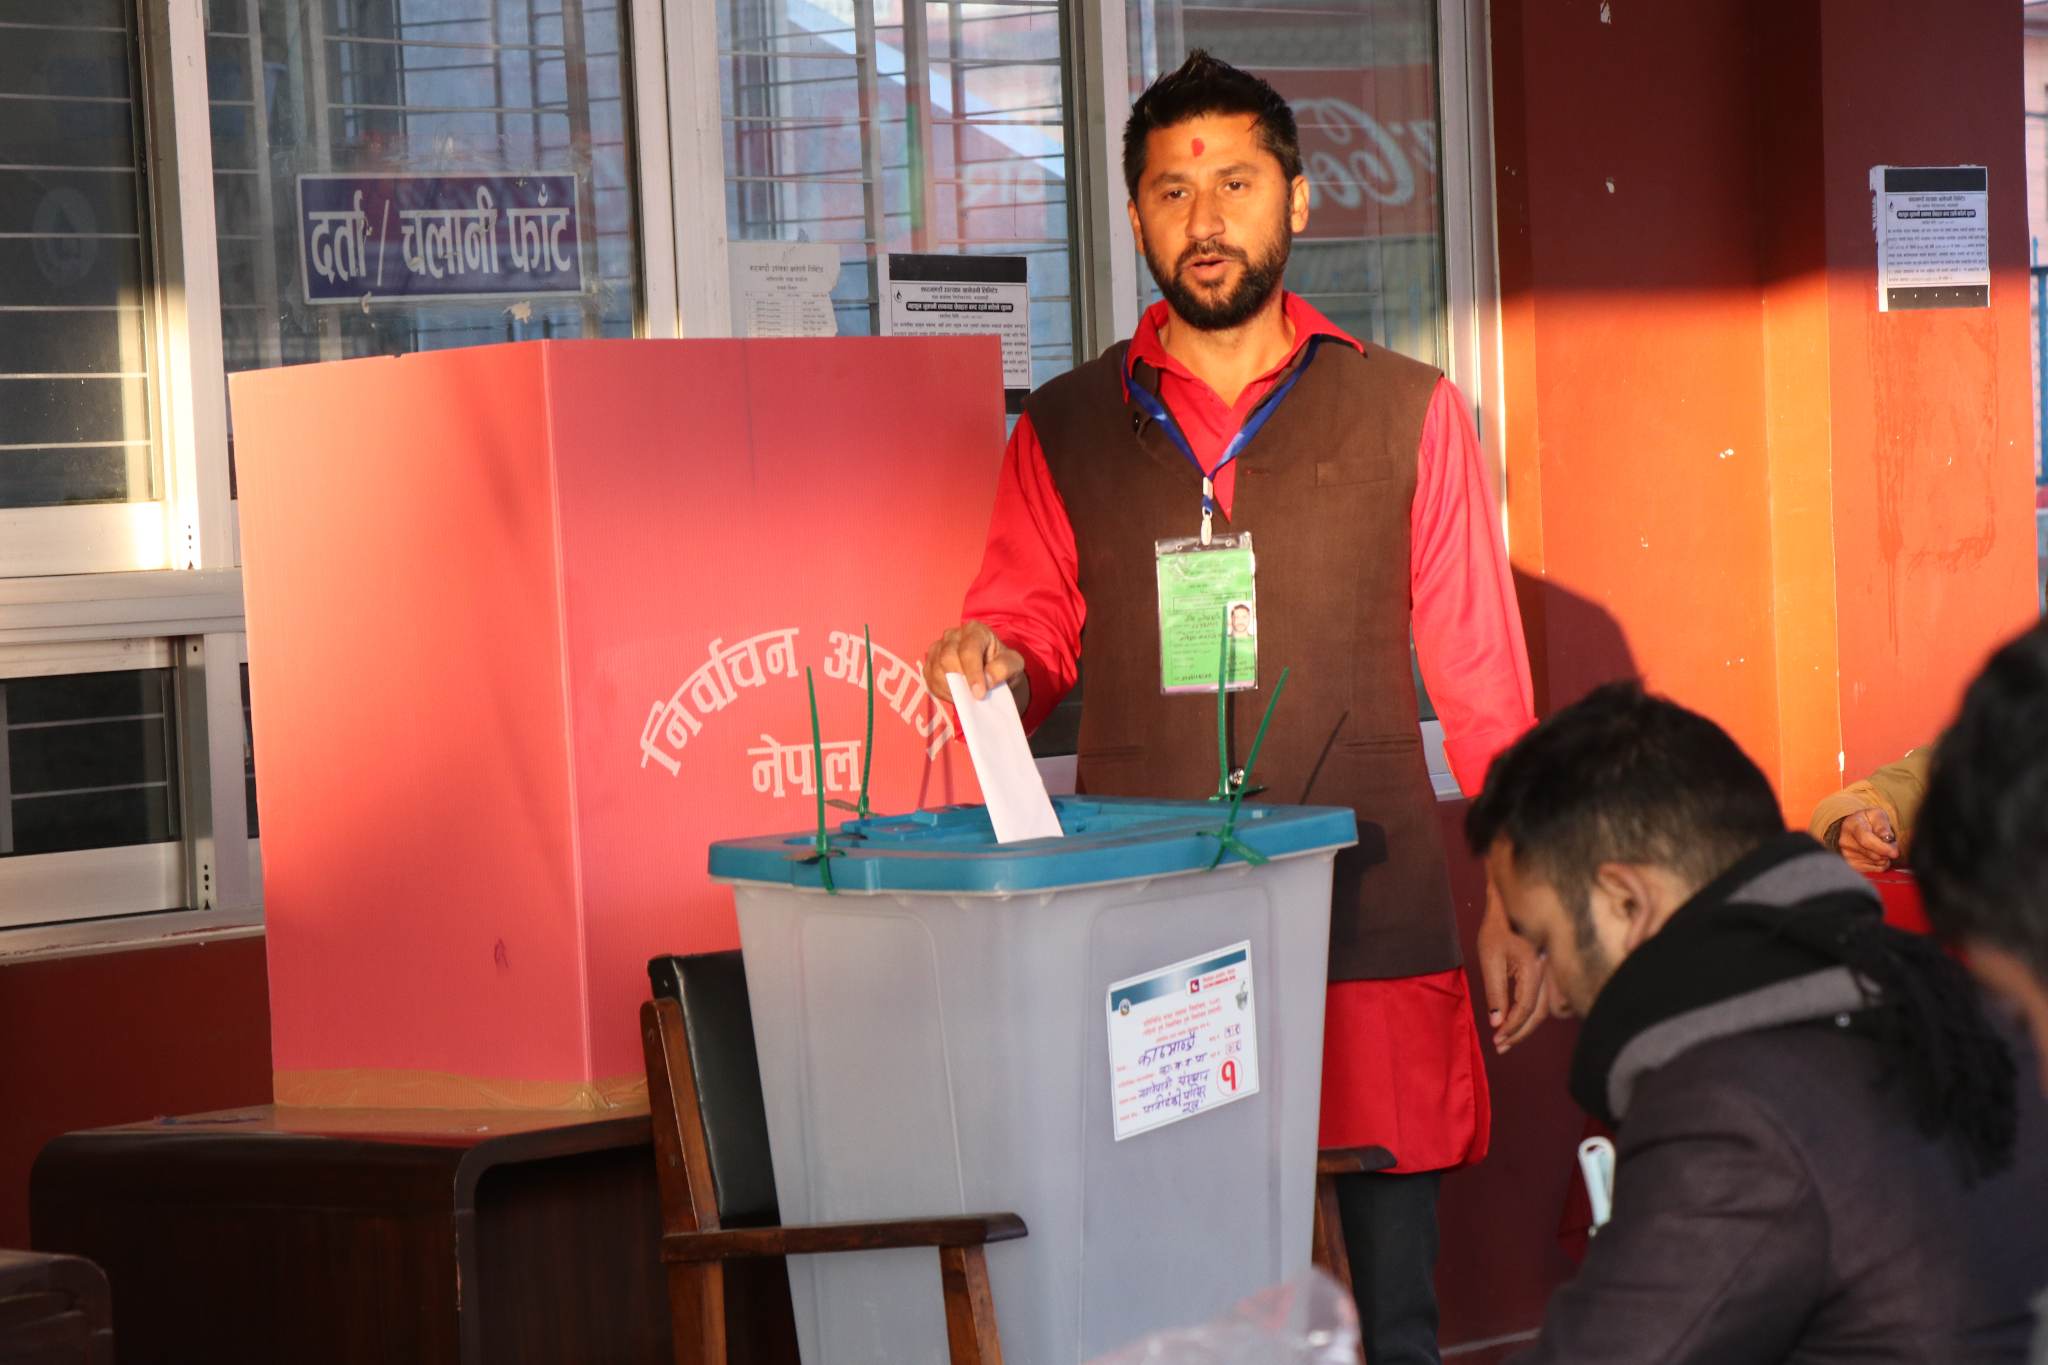 आम निर्वाचनको मतदान सकियो, राष्ट्रिय स्वतन्त्र पार्टी पहिलो प्रयासमै चम्किने संकेत